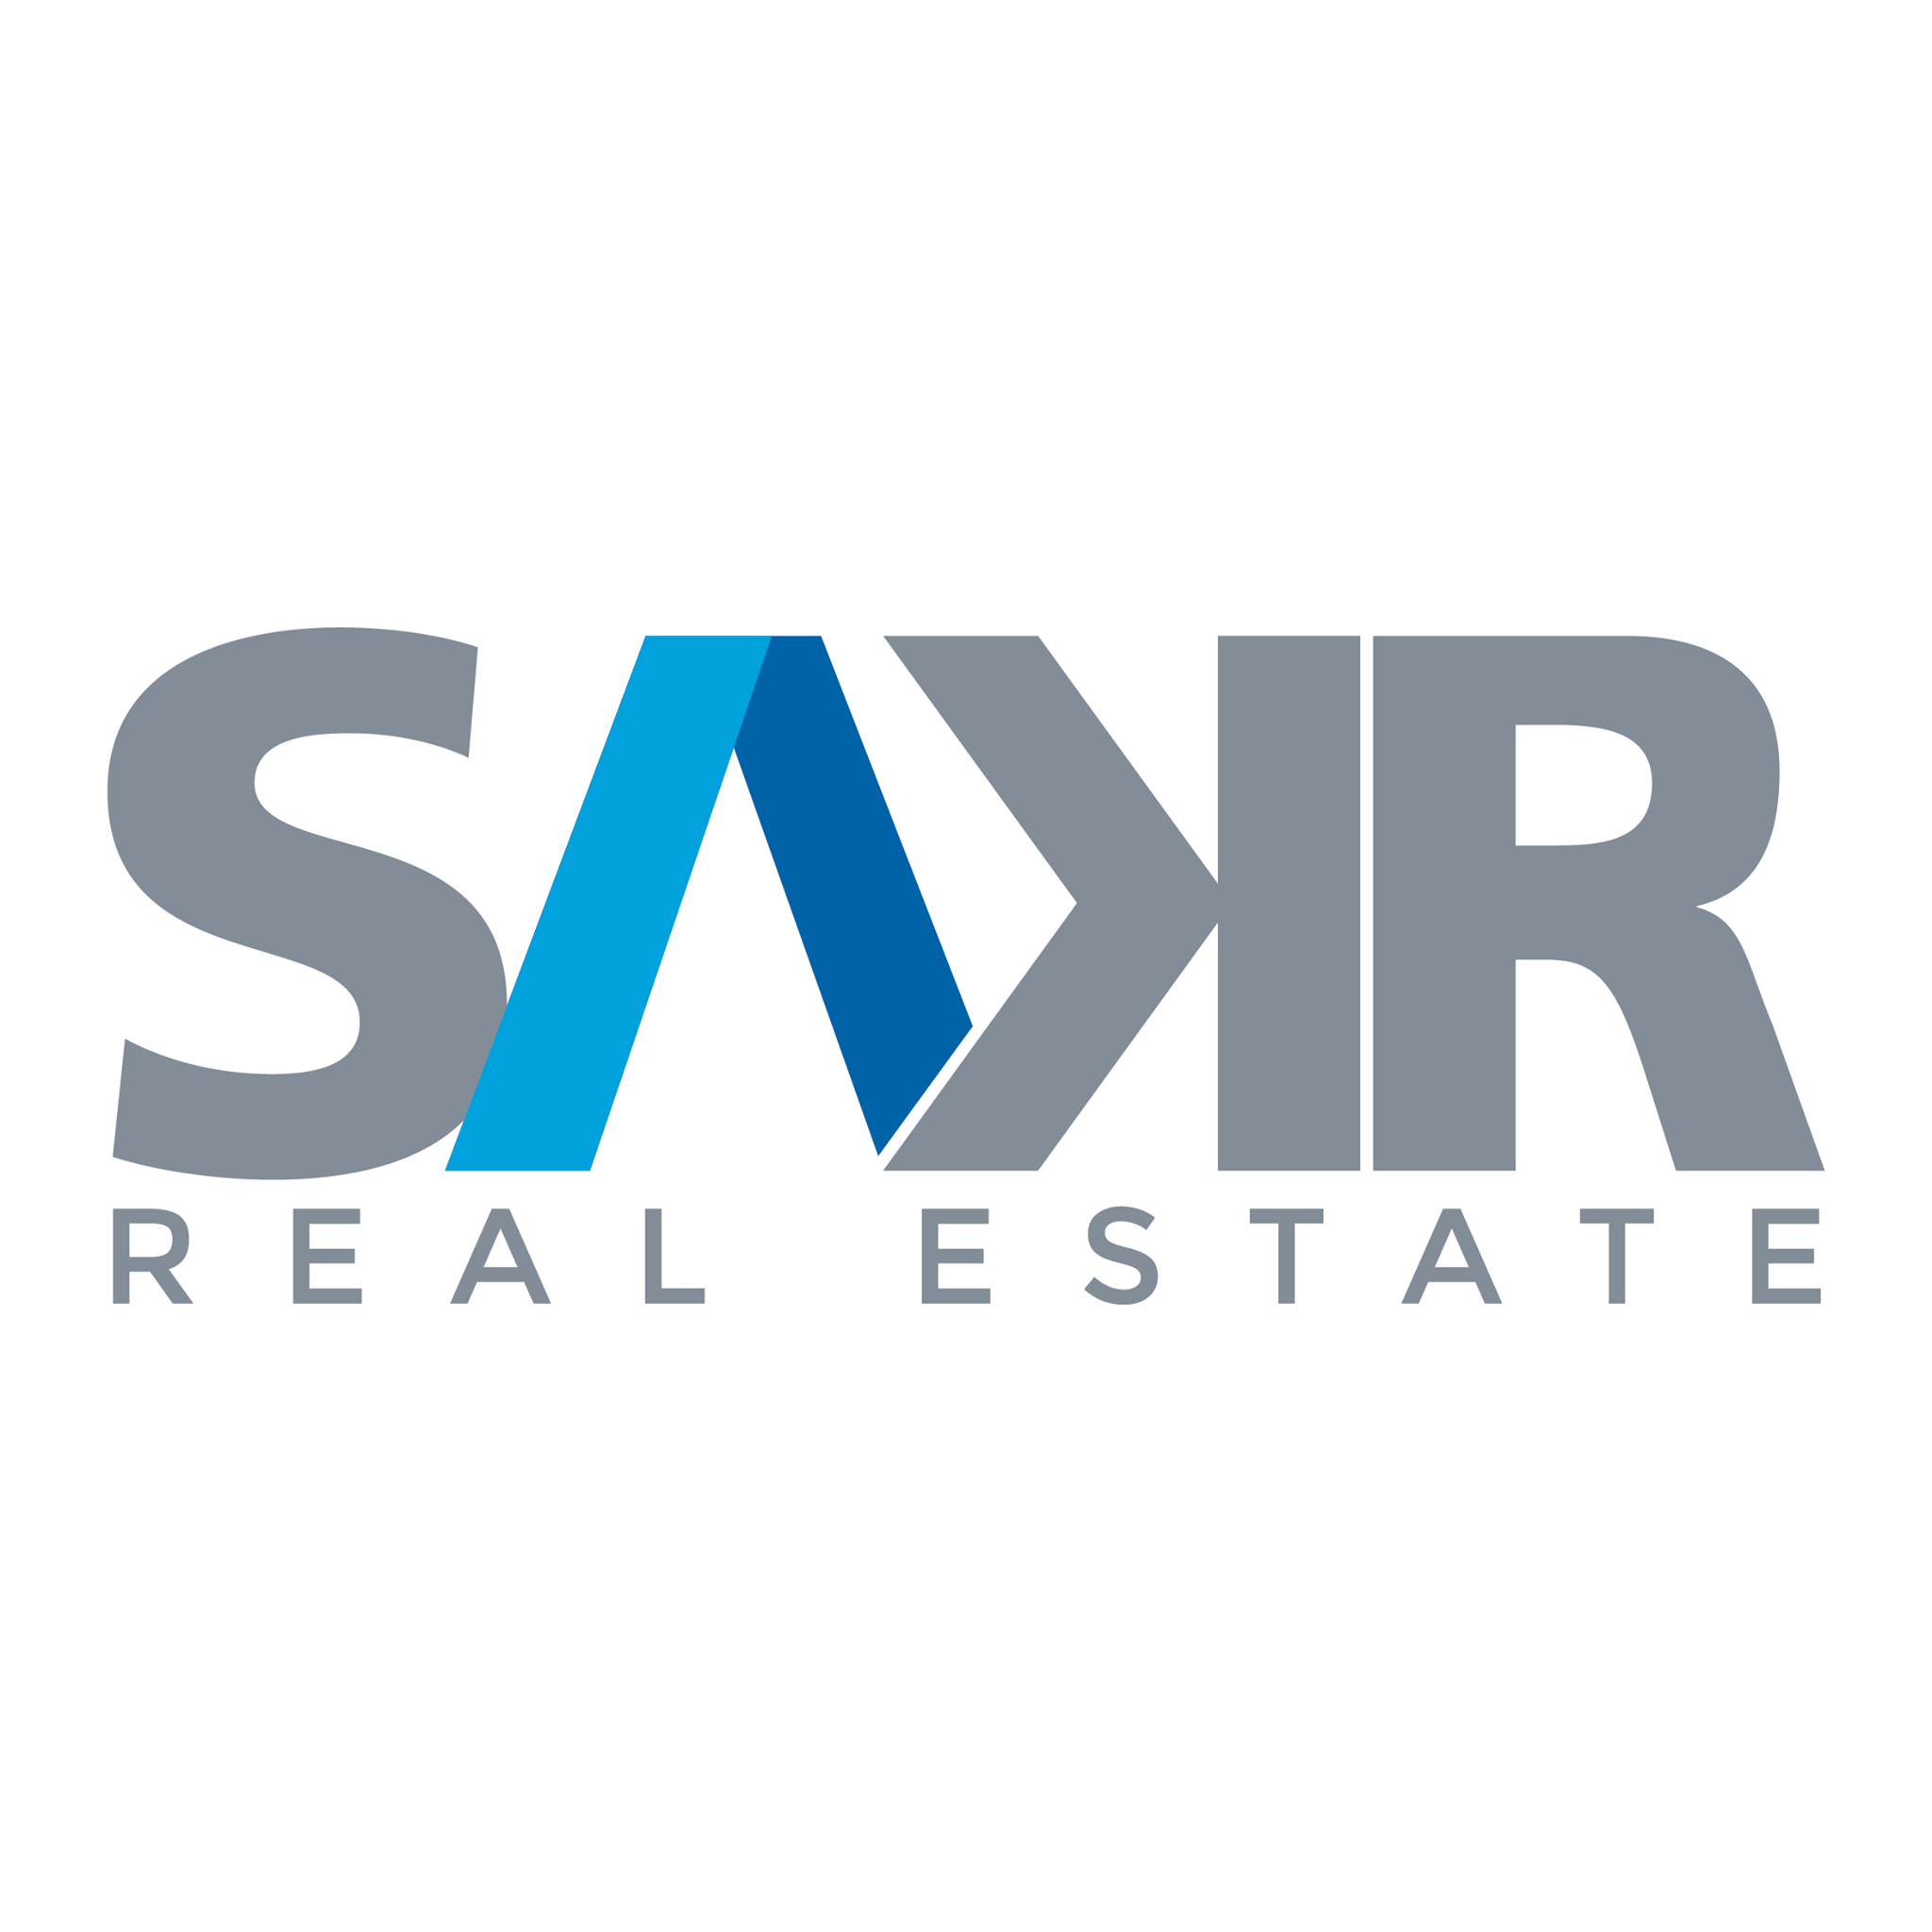 Sakr Real Estate